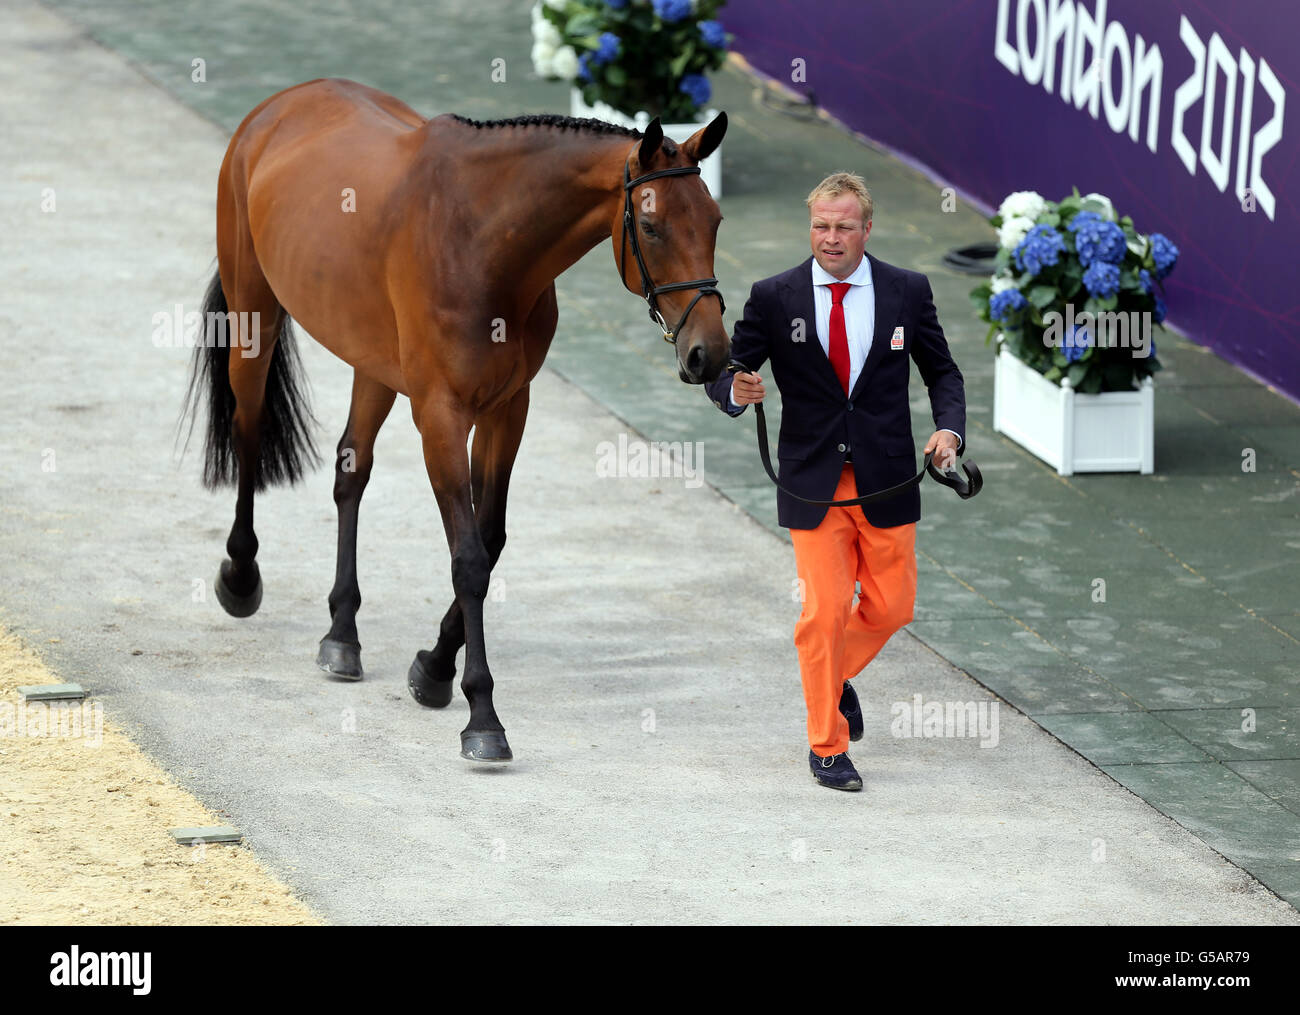 Der niederländische Andrew Heffernan mit seinem Pferd Millthyme Corolla nimmt an der ersten Eventing Olympic Horse Inspection im Greenwich Park, London, Teil. Stockfoto